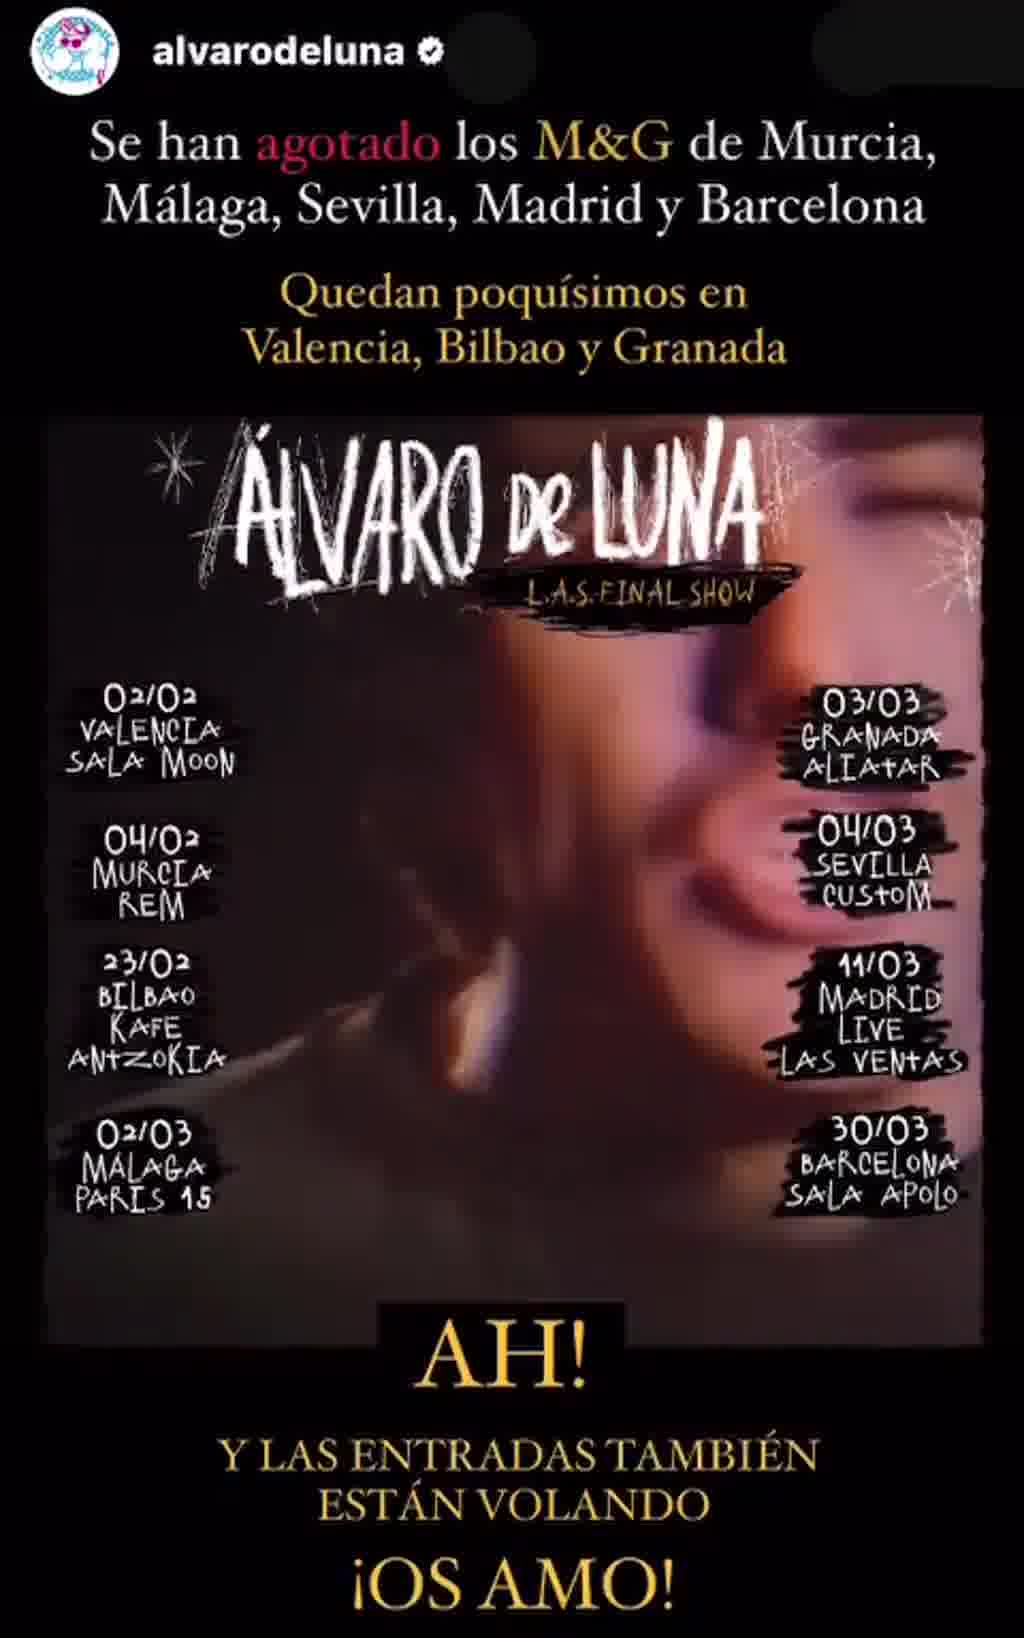 Álvaro de Luna anunciaba hace unas semanas de ‘L.A.S Final Show’ y la entradas están volando